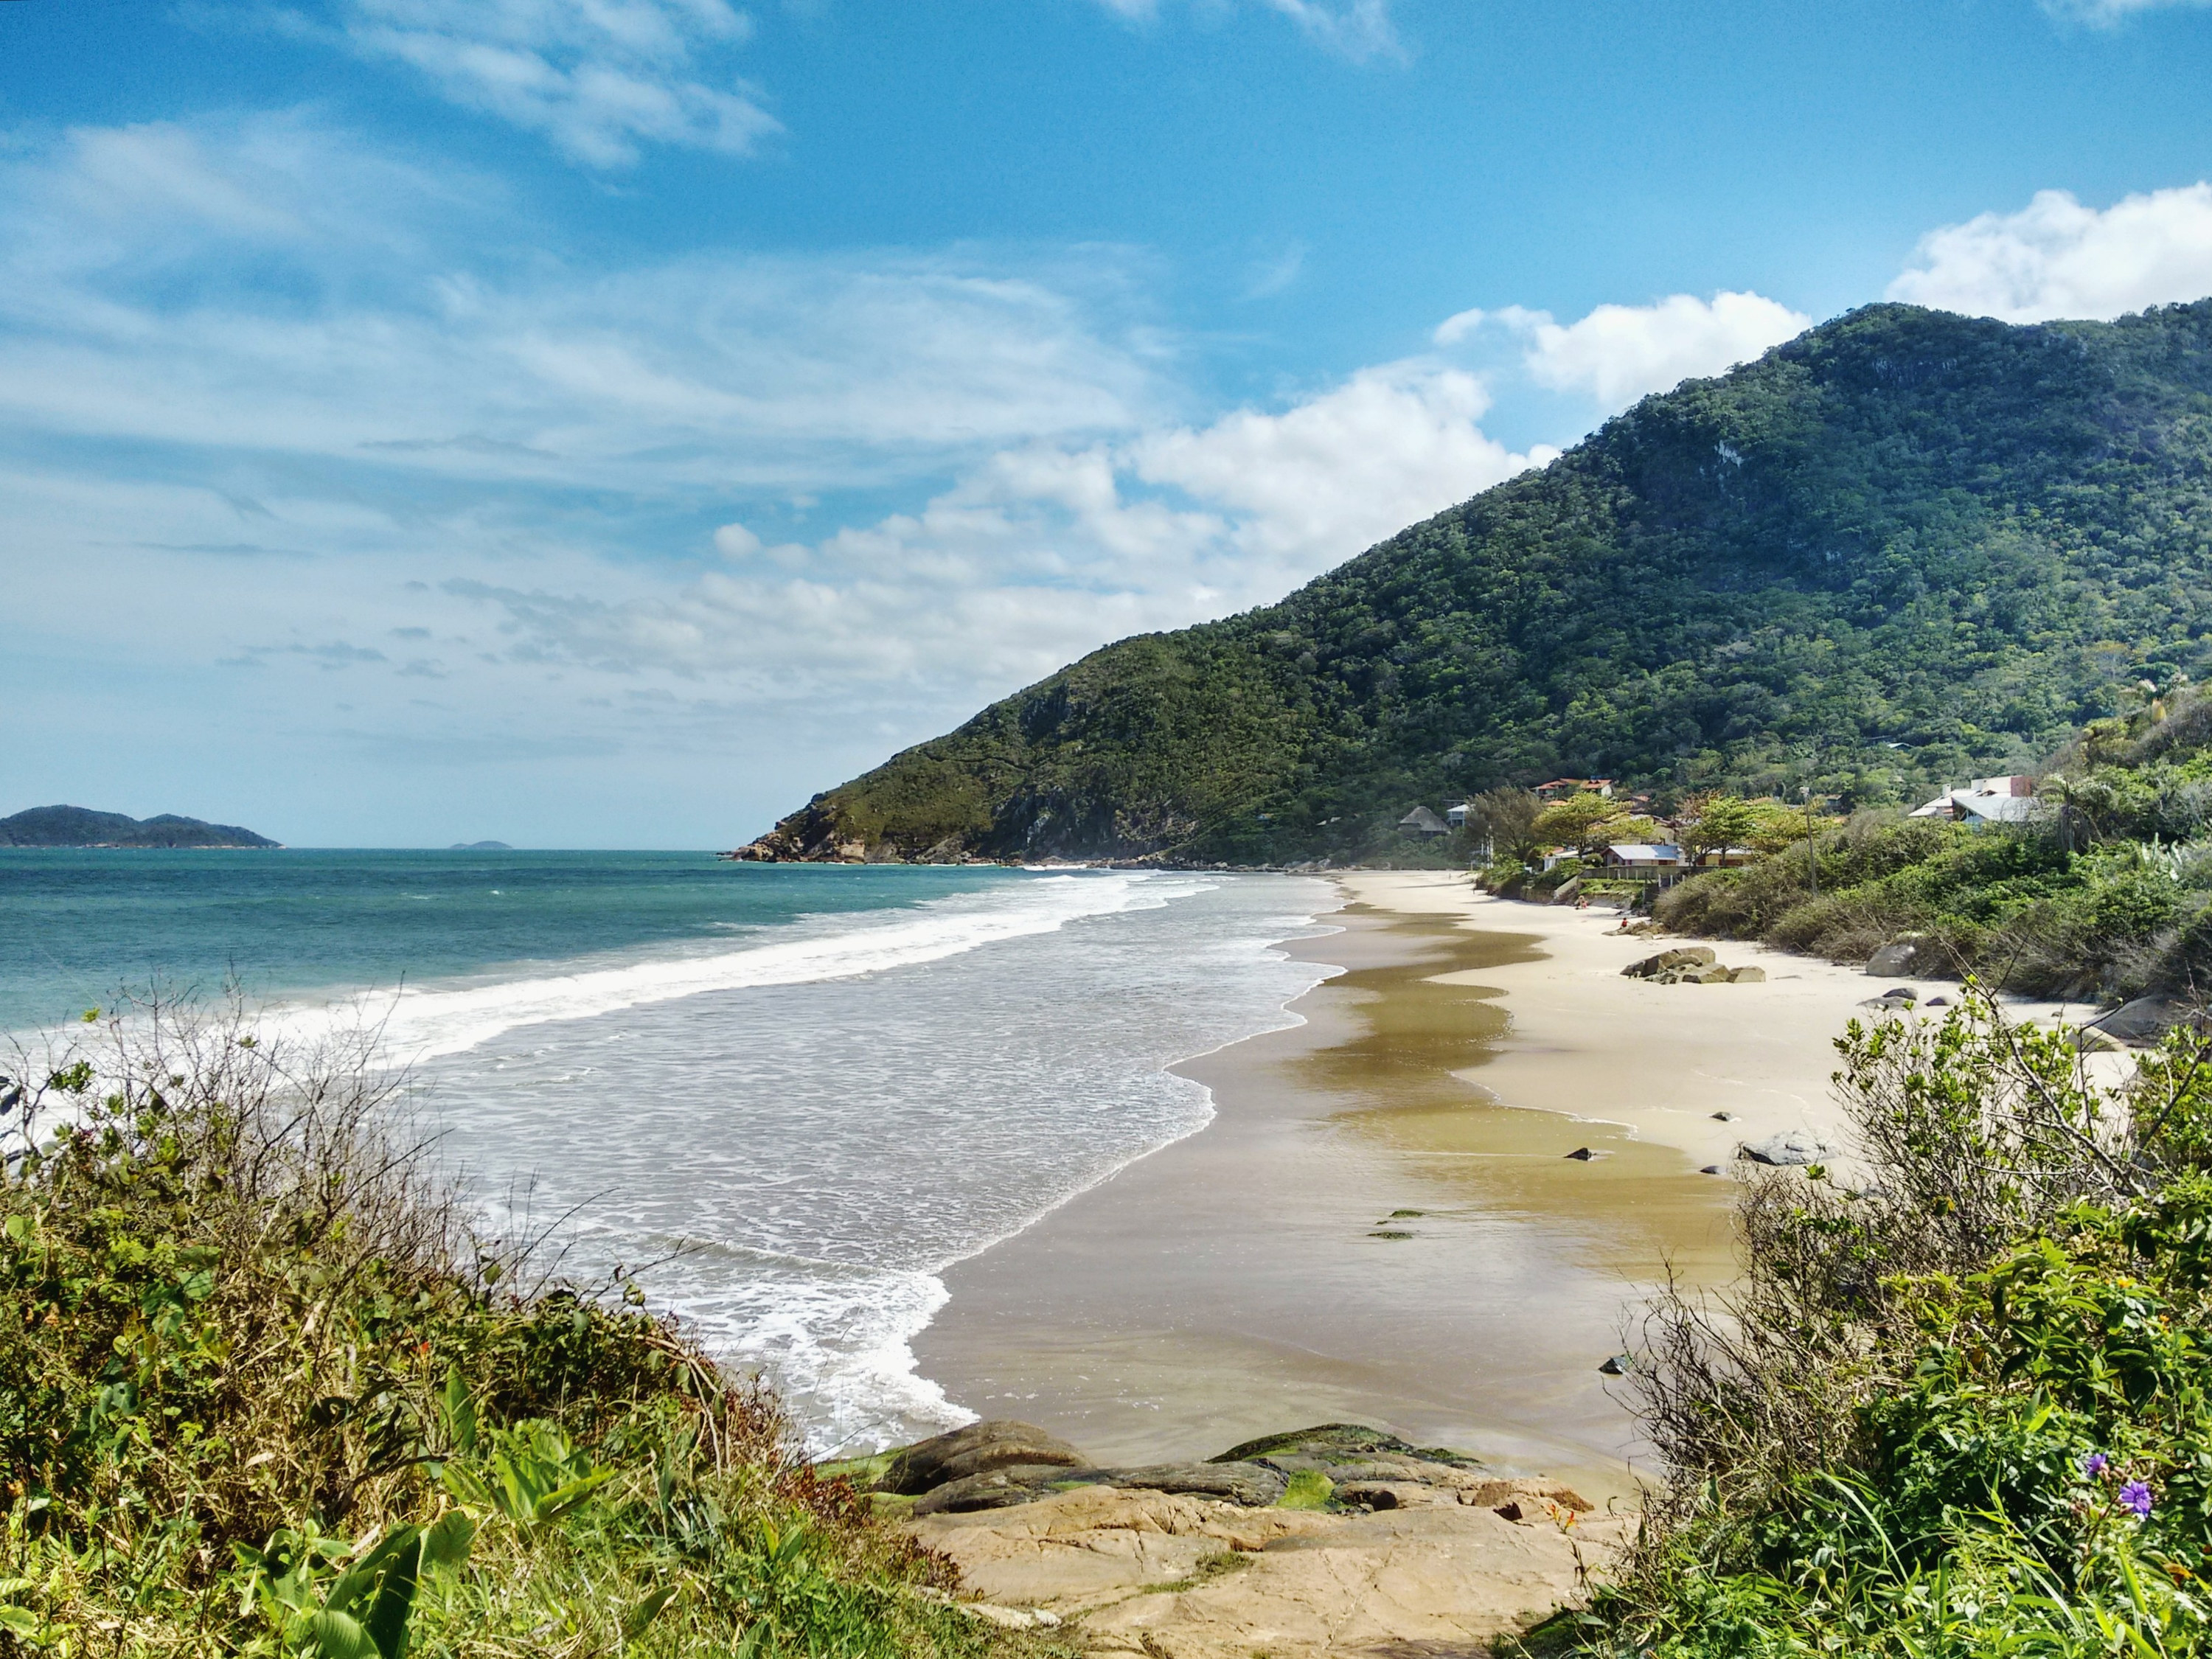 A remote beach in Brazil.